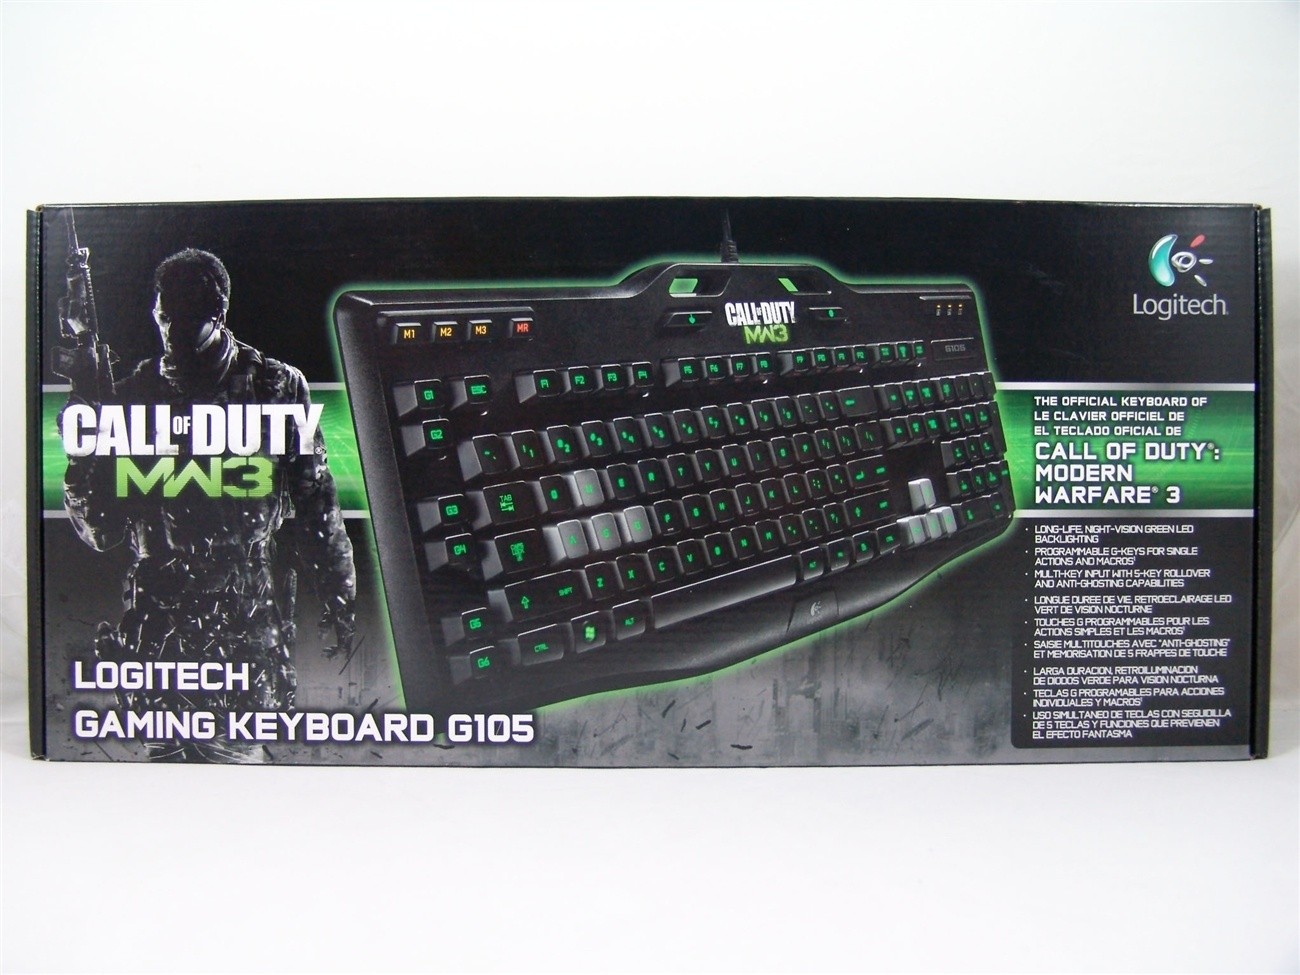 Logitech Gaming Keyboard G105 Price